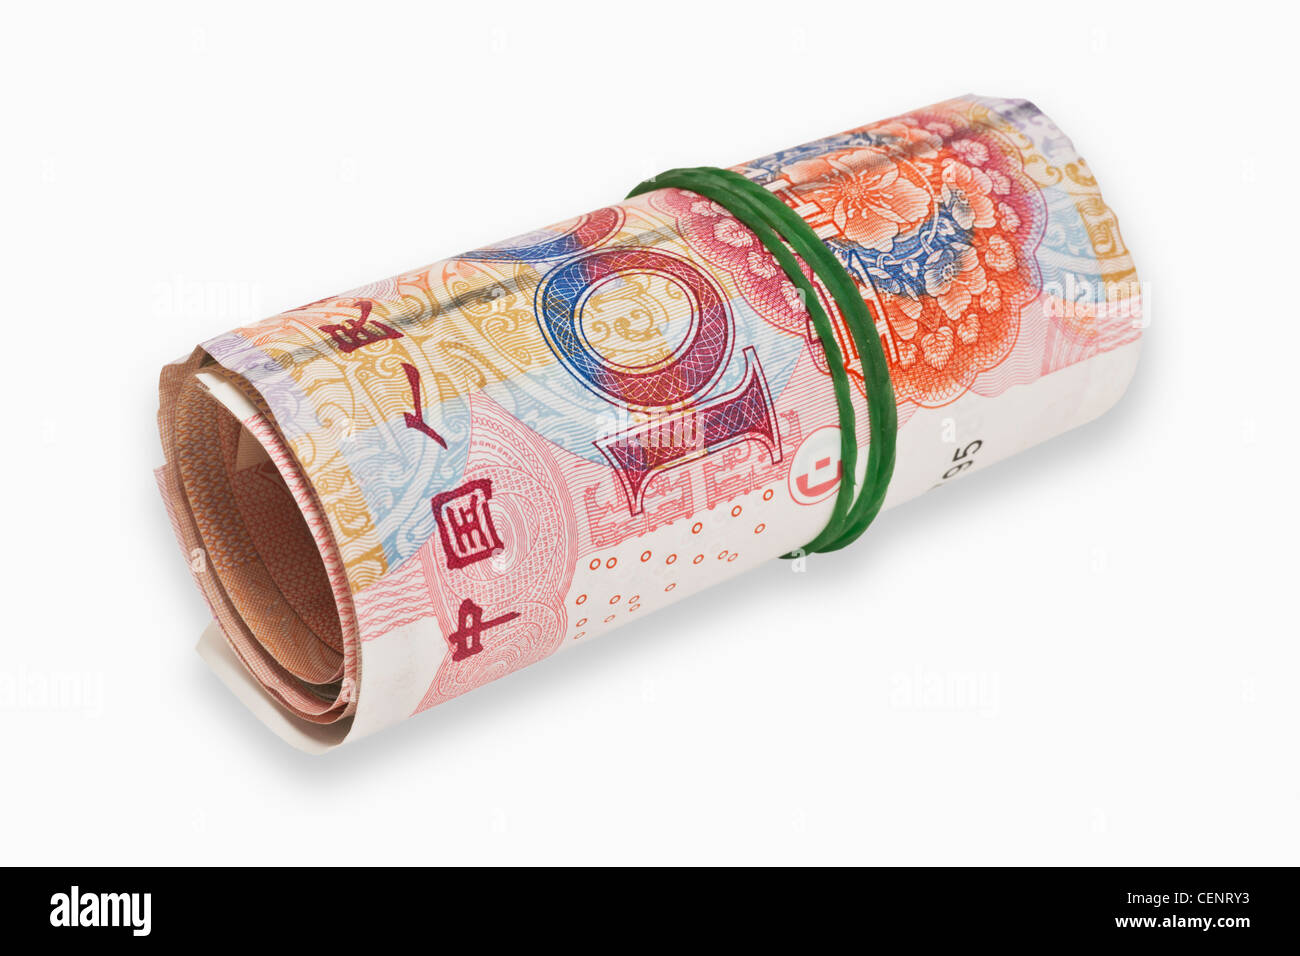 Molti 100 Yuan bollette, arrotolate e tenute insieme da una gomma. Il renminbi, la valuta cinese, è stato introdotto nel 1949. Foto Stock